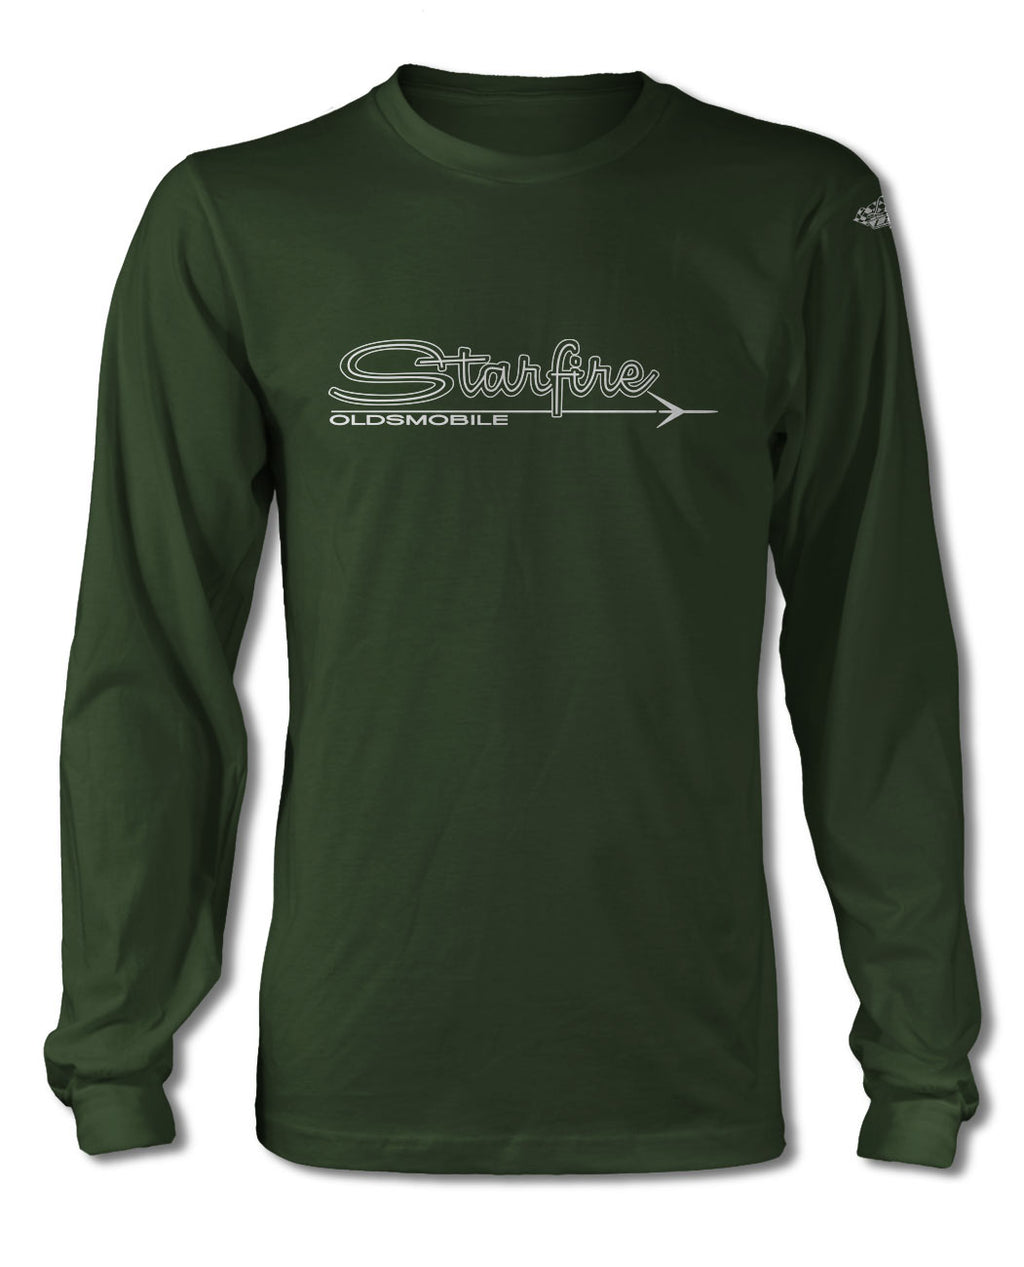 Oldsmobile Starfire Emblem 1963 - T-Shirt Long Sleeves - Vintage Emblem